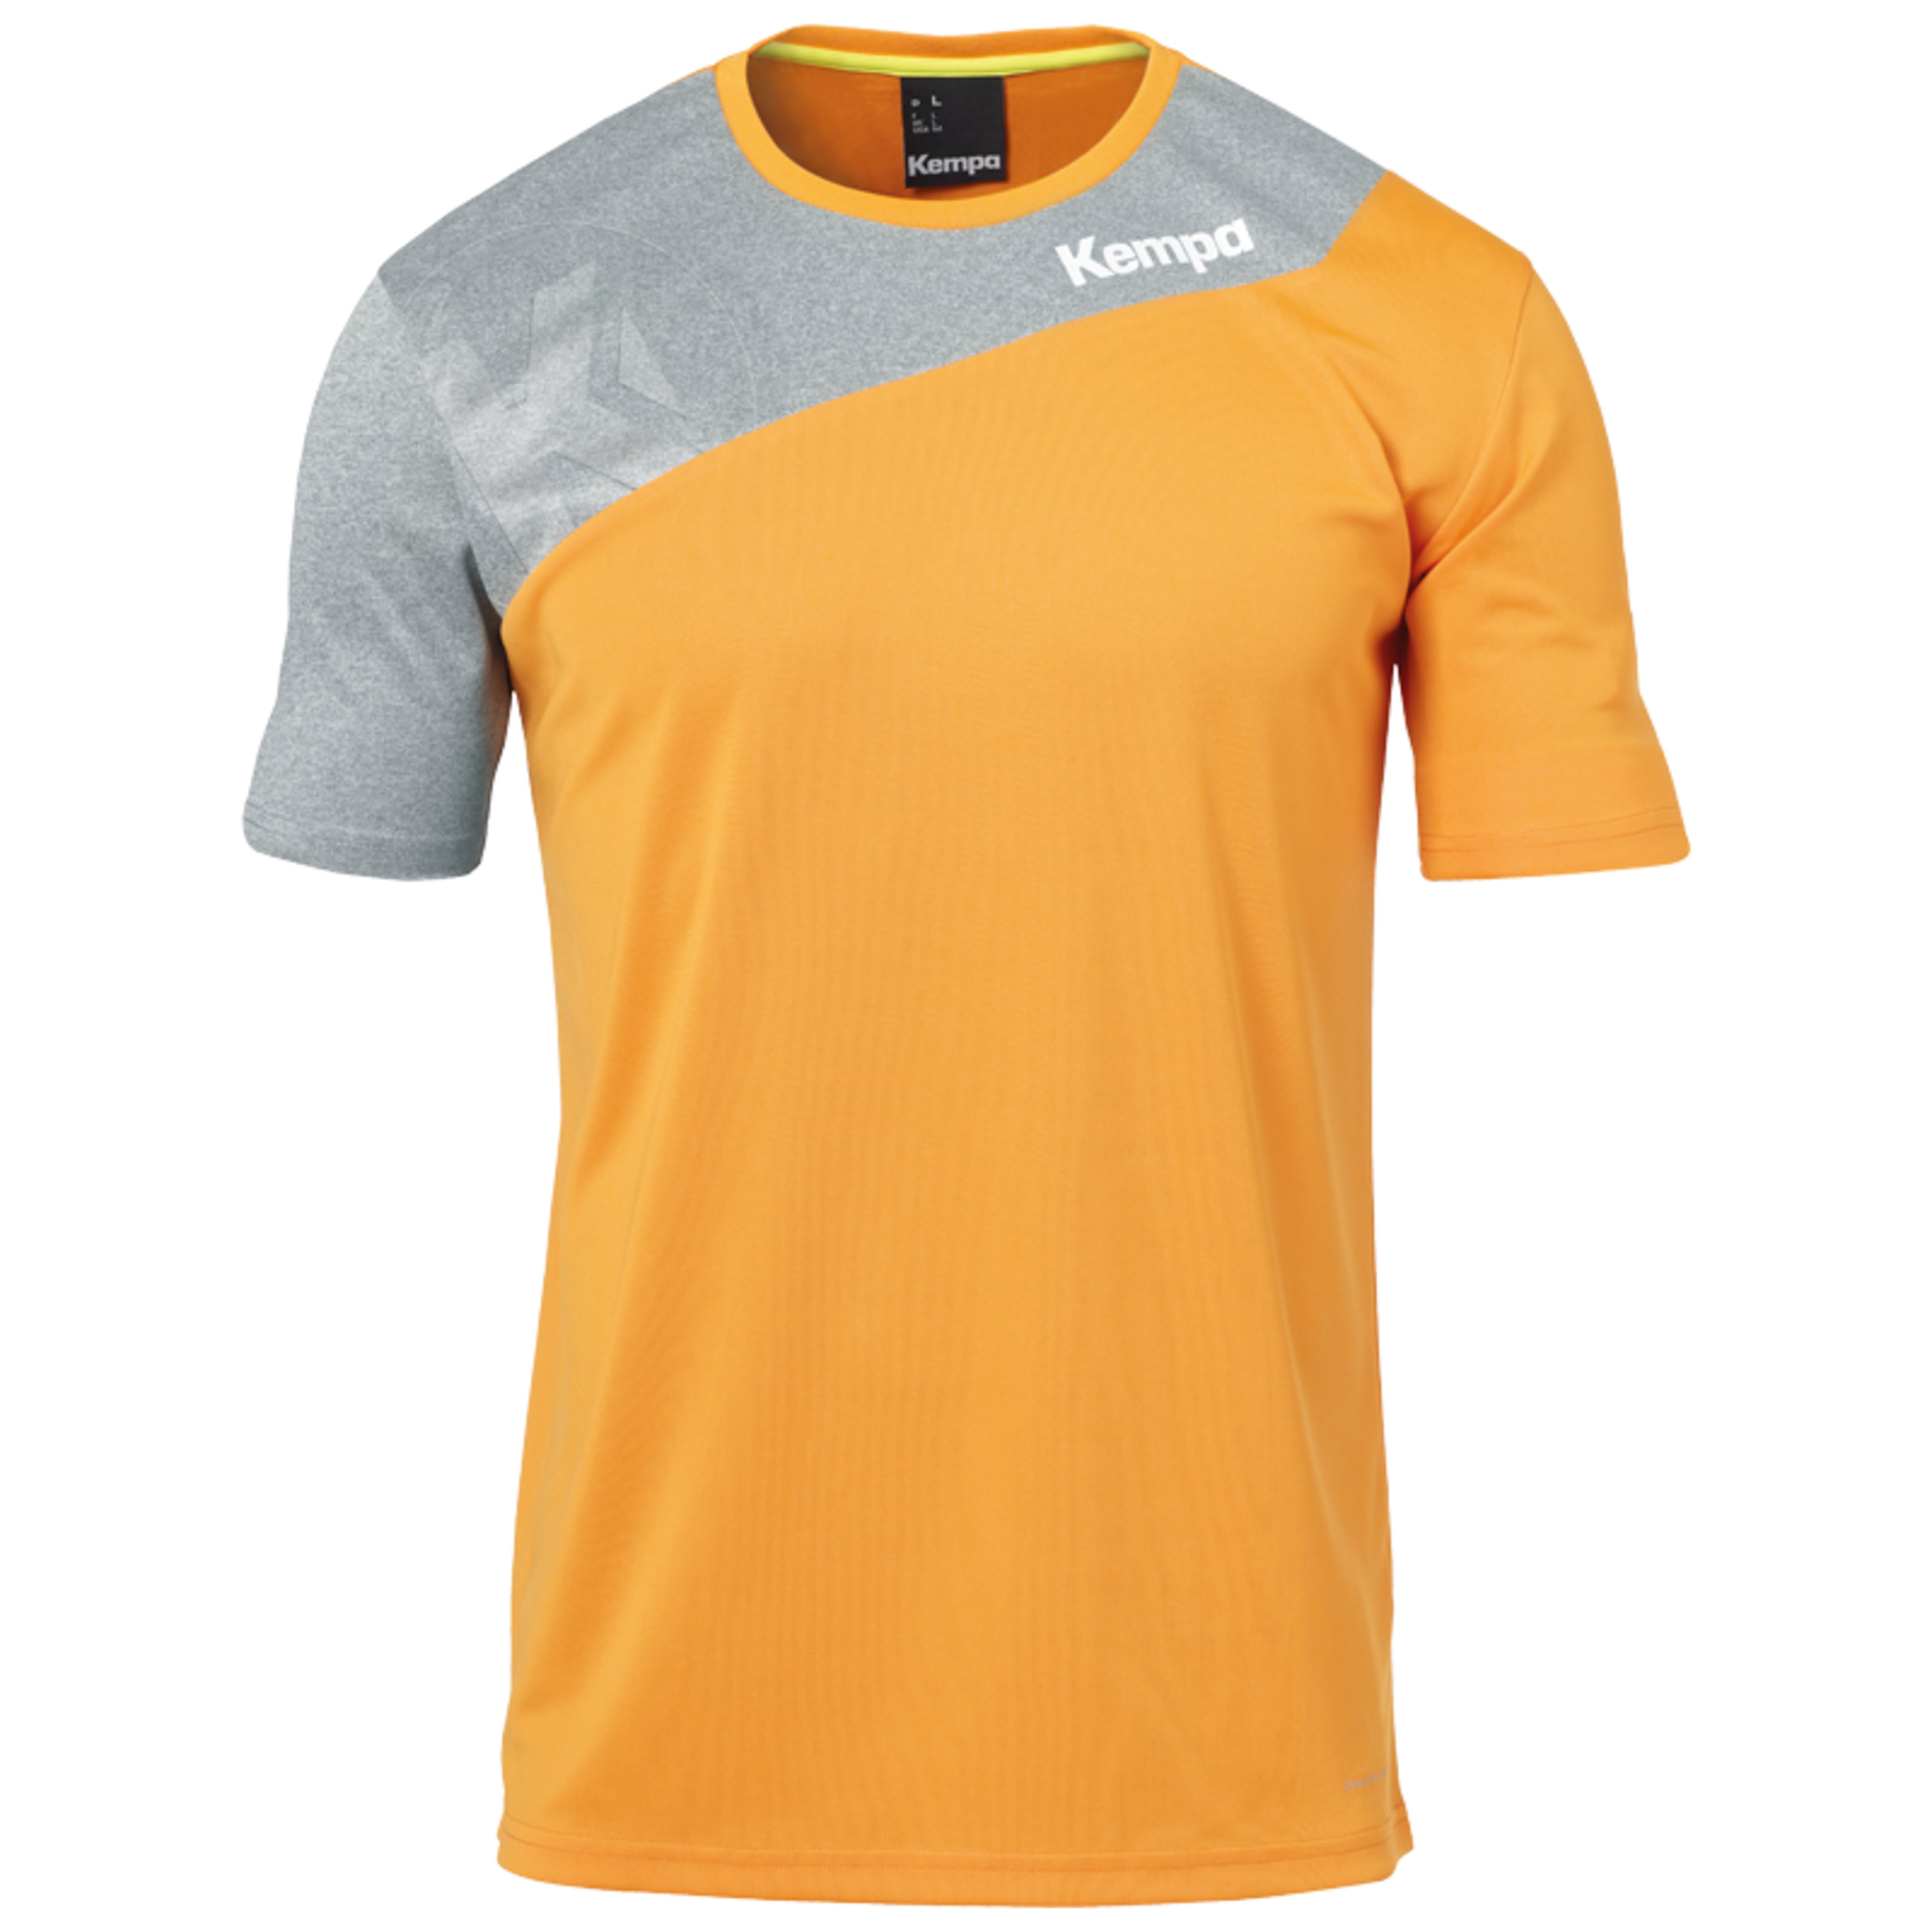 Core 2.0 Shirt Naranja Fresh/gris Oscuro Kempa - naranja - 